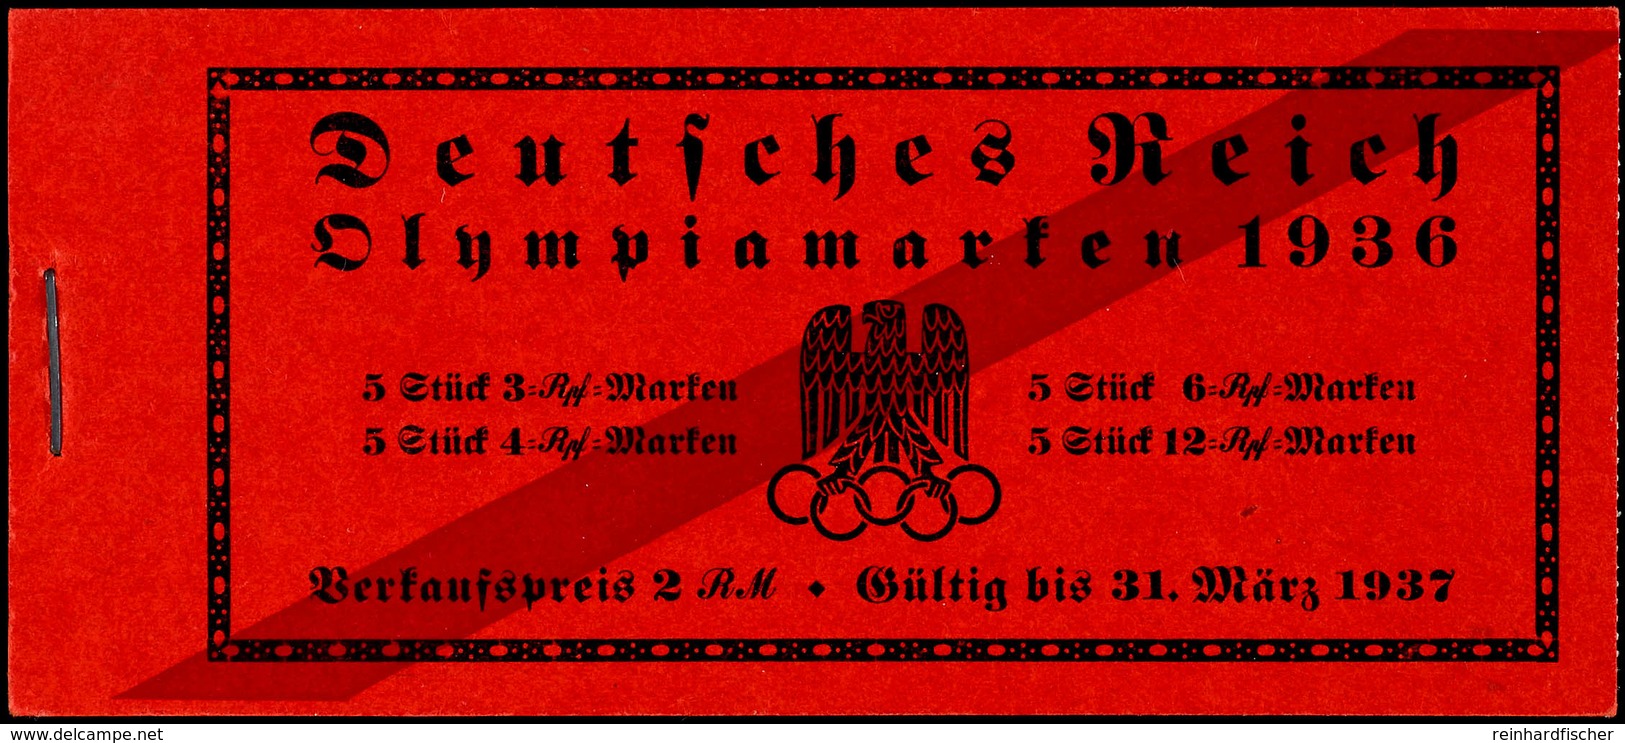 Olympische Spiele 1936, Markenheftchen Mit Querbalken Auf Deckelseite, Postfrisch, Tadellos, Fotoattest Schlegel D. BPP, - Markenheftchen